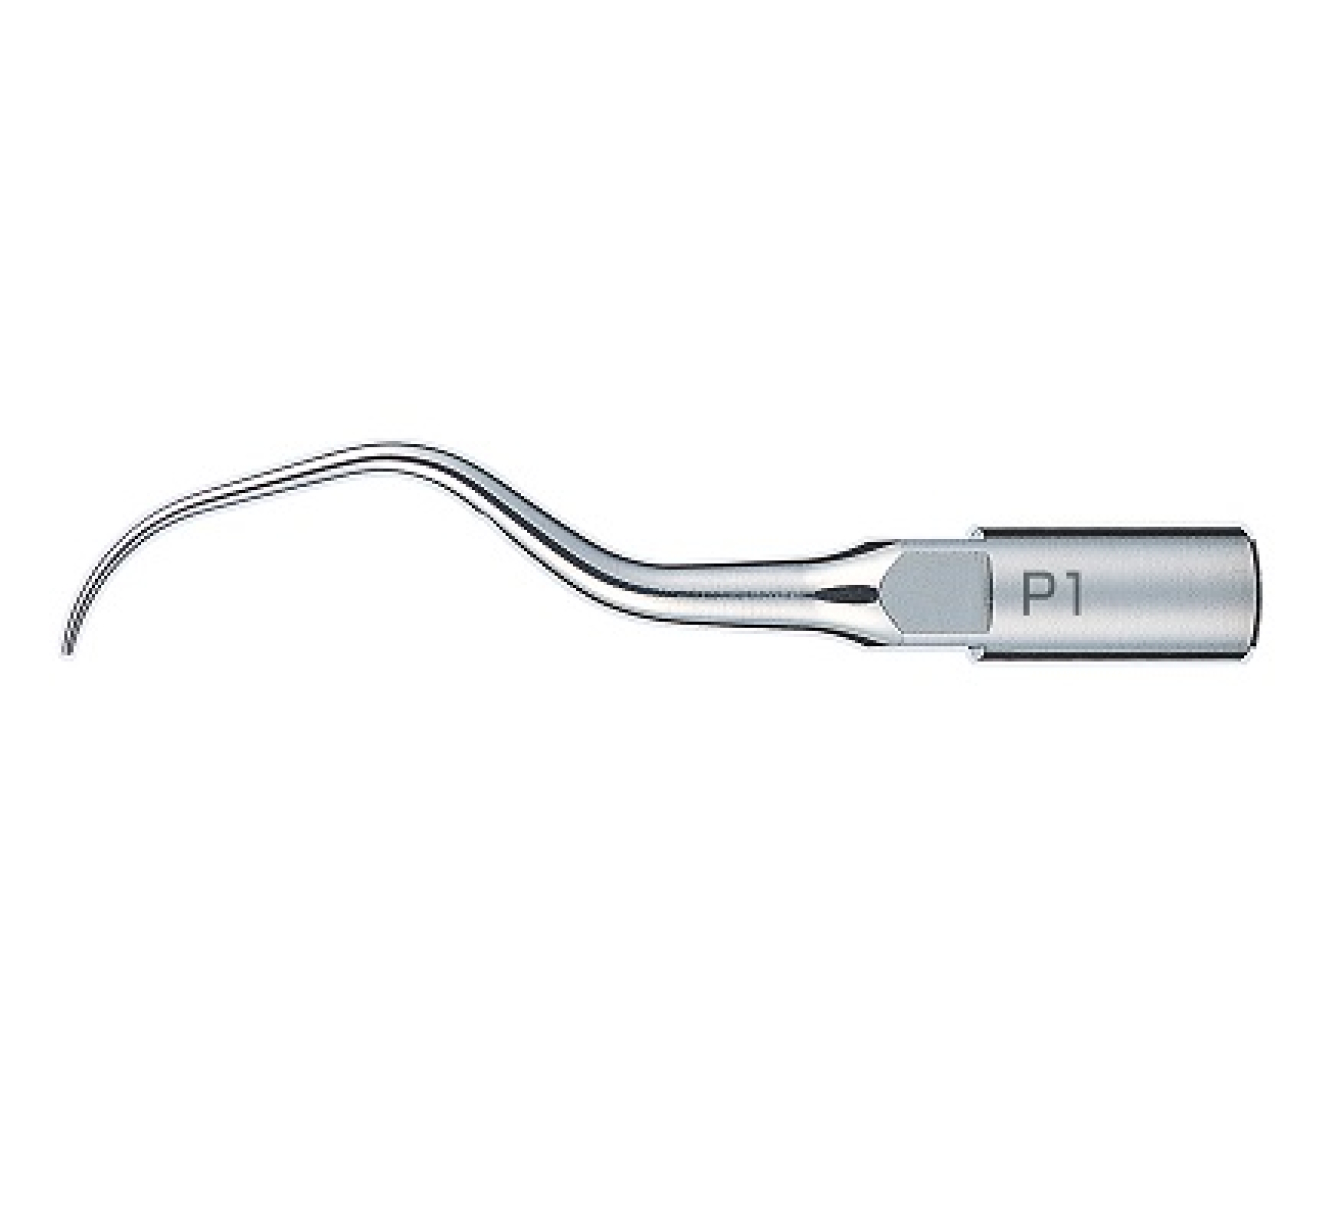 P1 Стоматологическая насадка для Varios, позволяющая легко обрабатывать передние зубы, NSK (Япония)